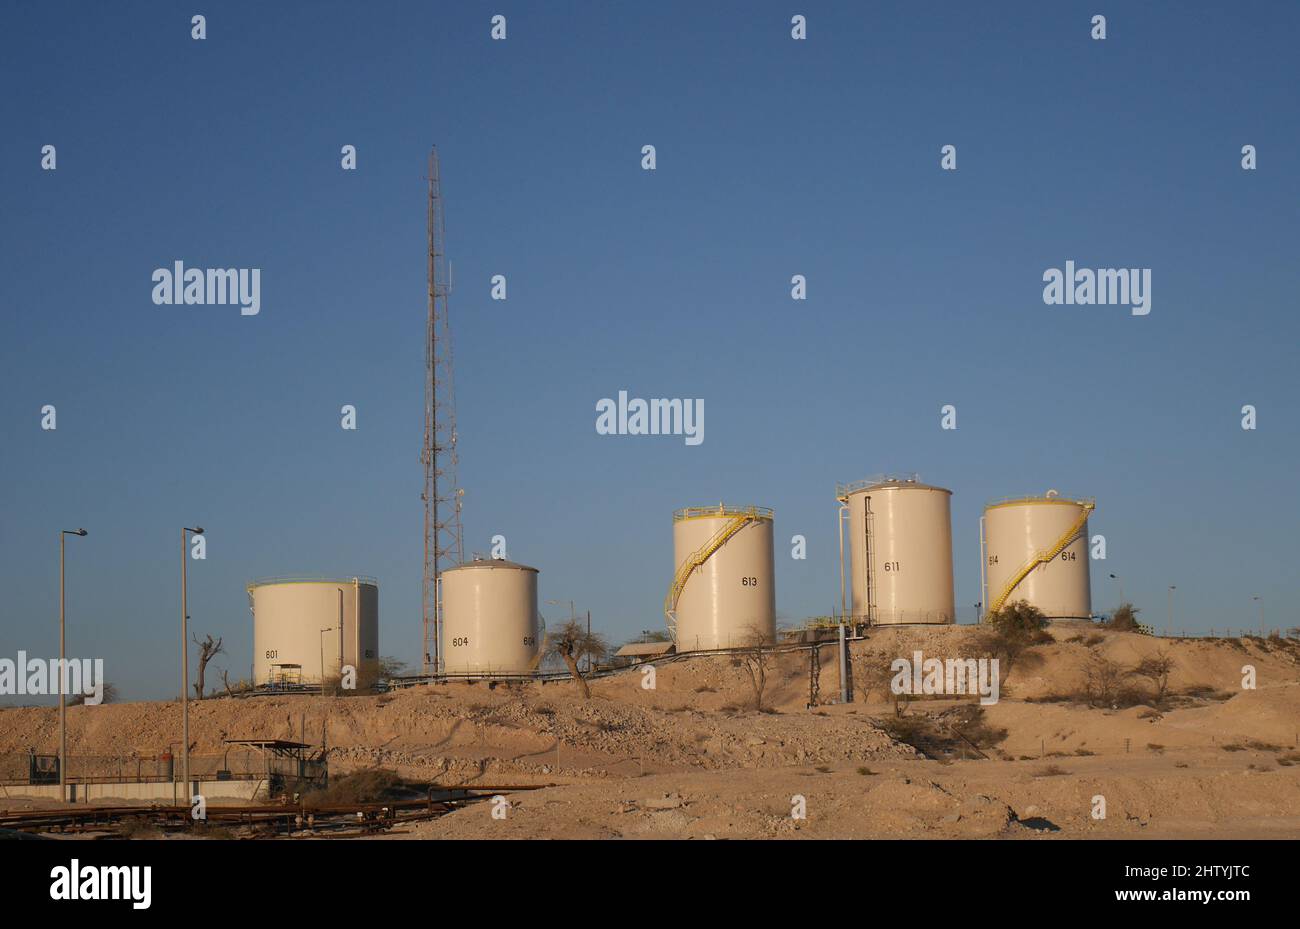 Oil storage tanks in the desert, Kingdom of Bahrain Stock Photo